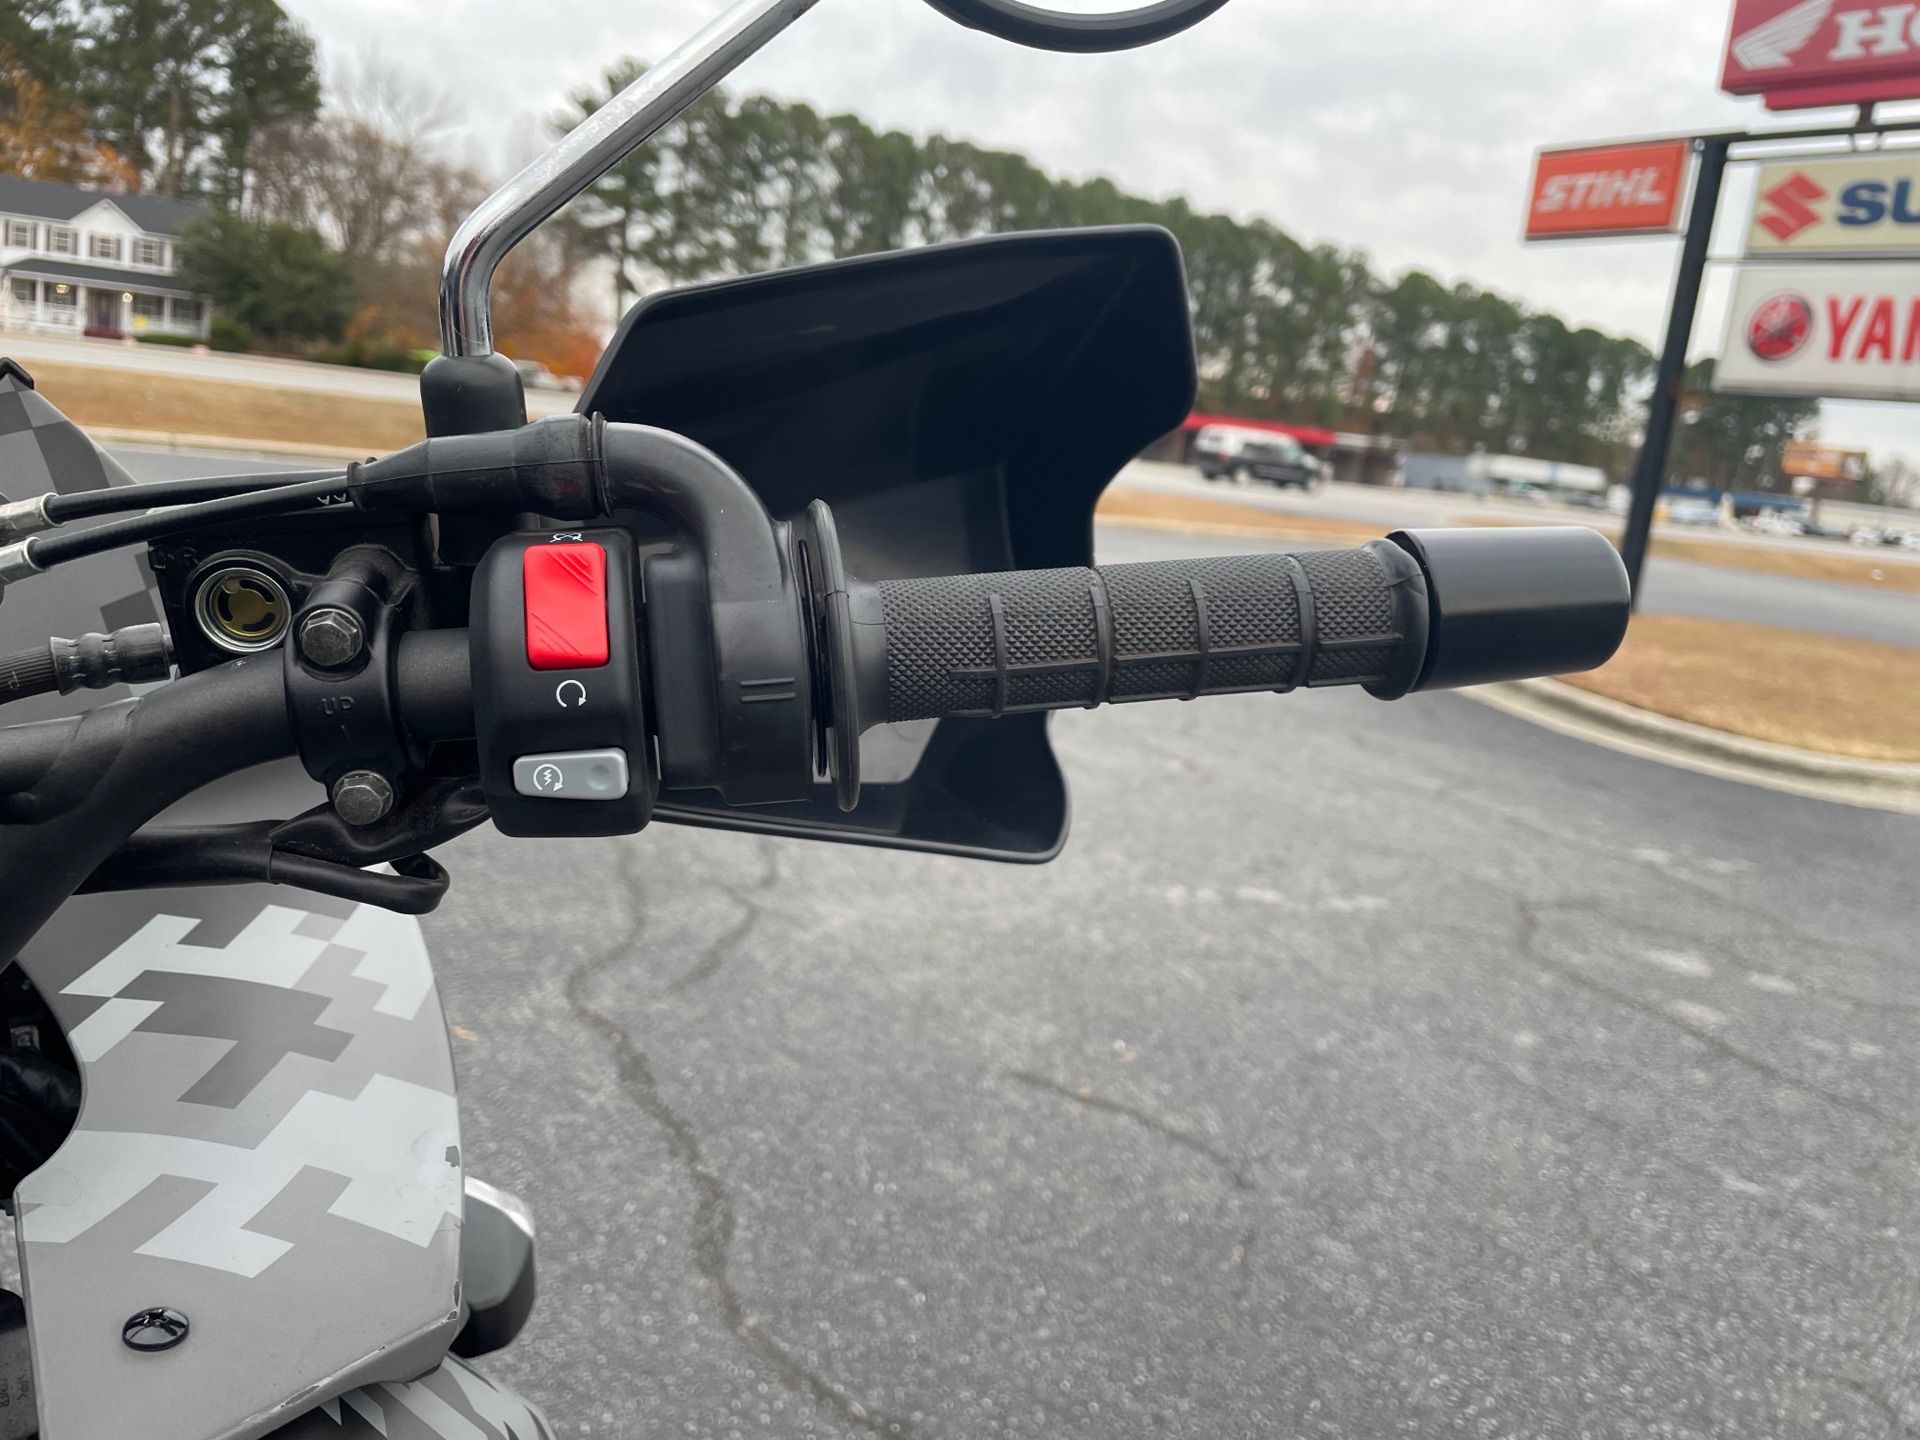 2018 Kawasaki KLR 650 in Greenville, North Carolina - Photo 22